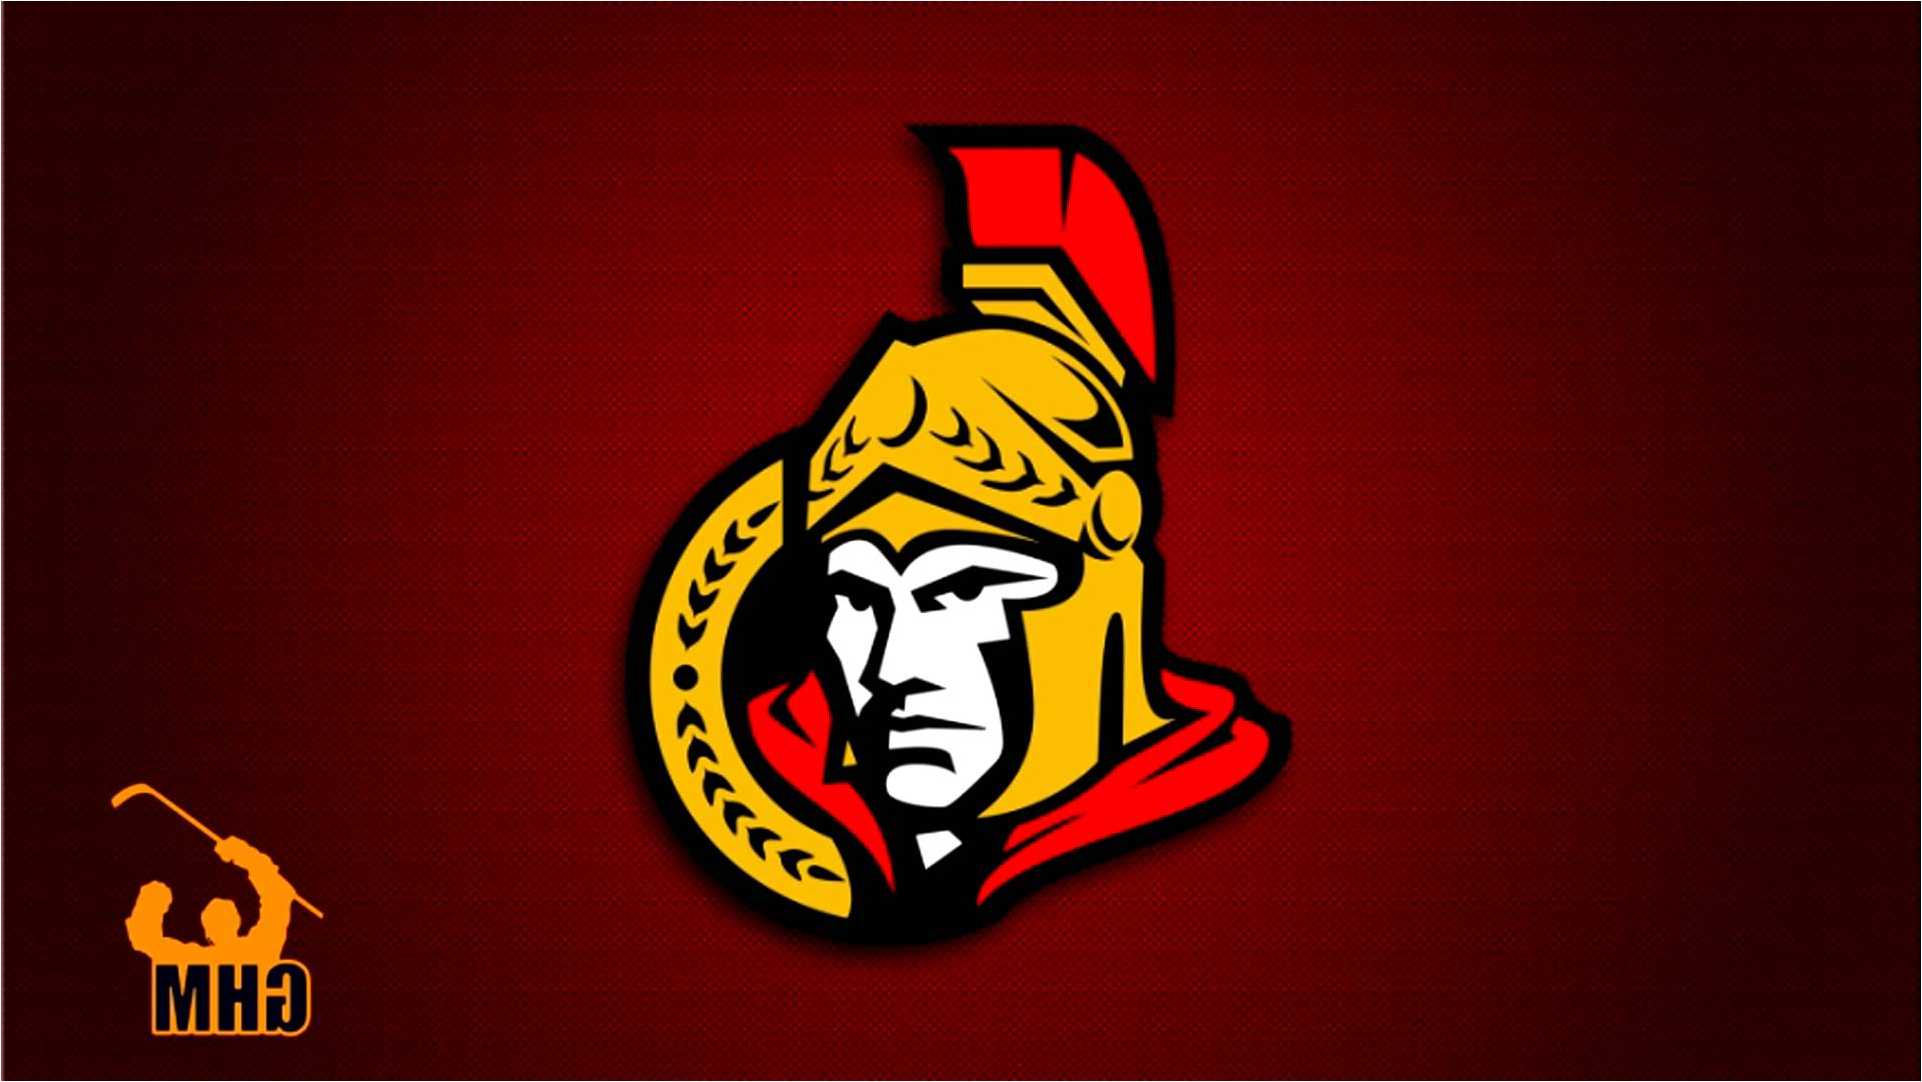 Ottawa Senators Wallpaper, Full HD 1080p, Best HD Ottawa Senators